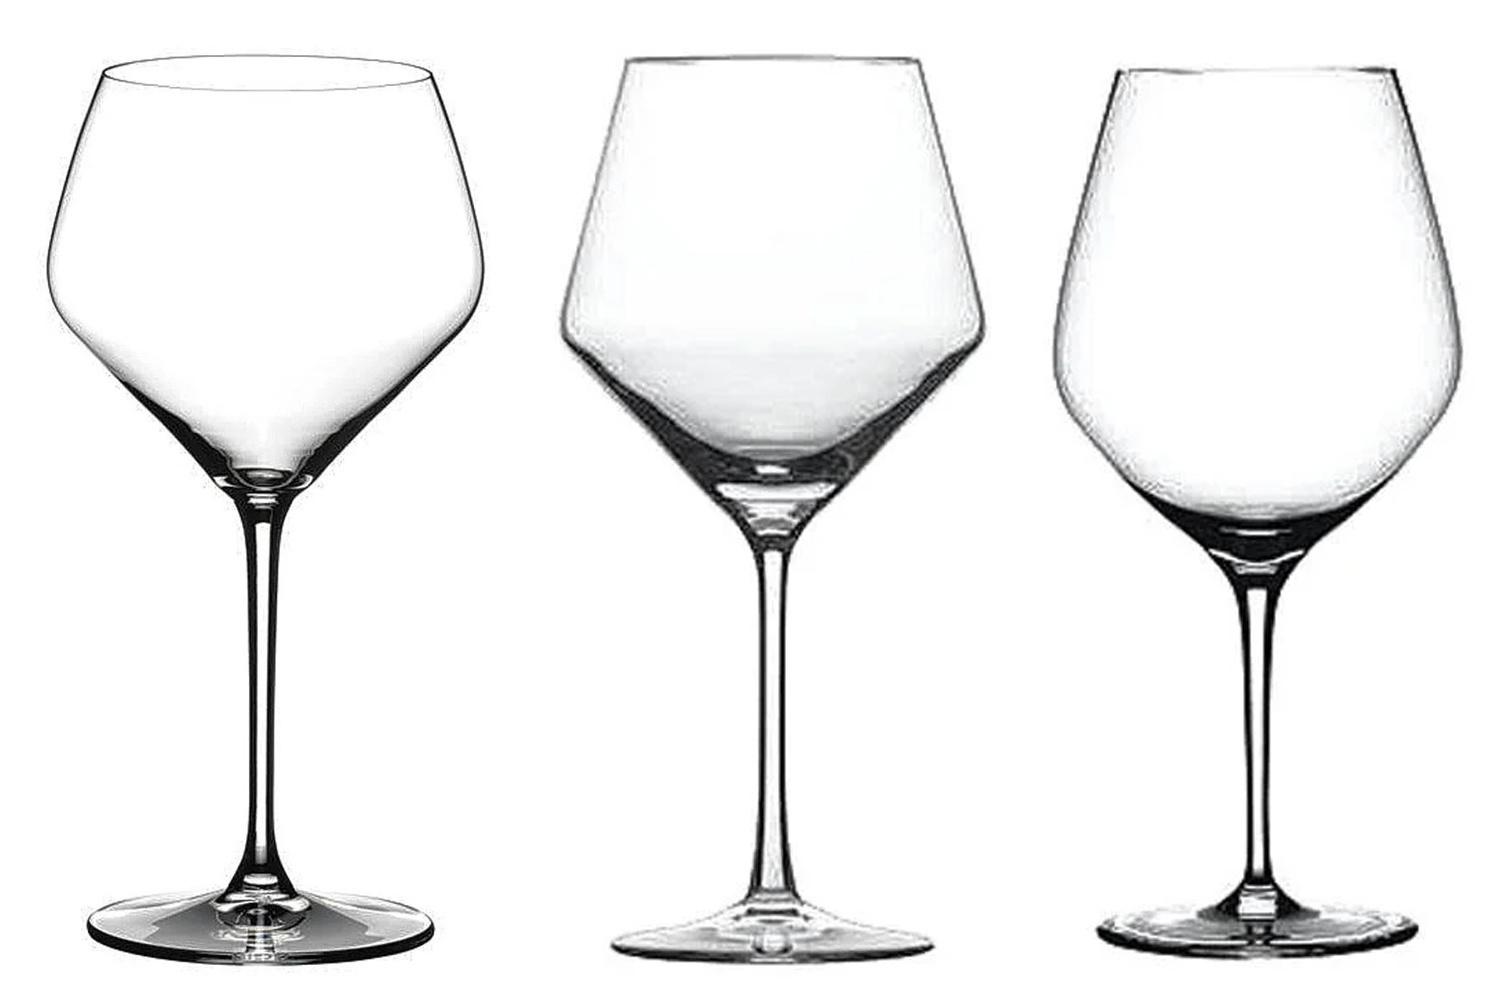 De gauche à droite: Verre à vin blanc, Riedel; verre à bourgogne, Schott Zwiesel; et verre à bourgogne, Spiegelau.